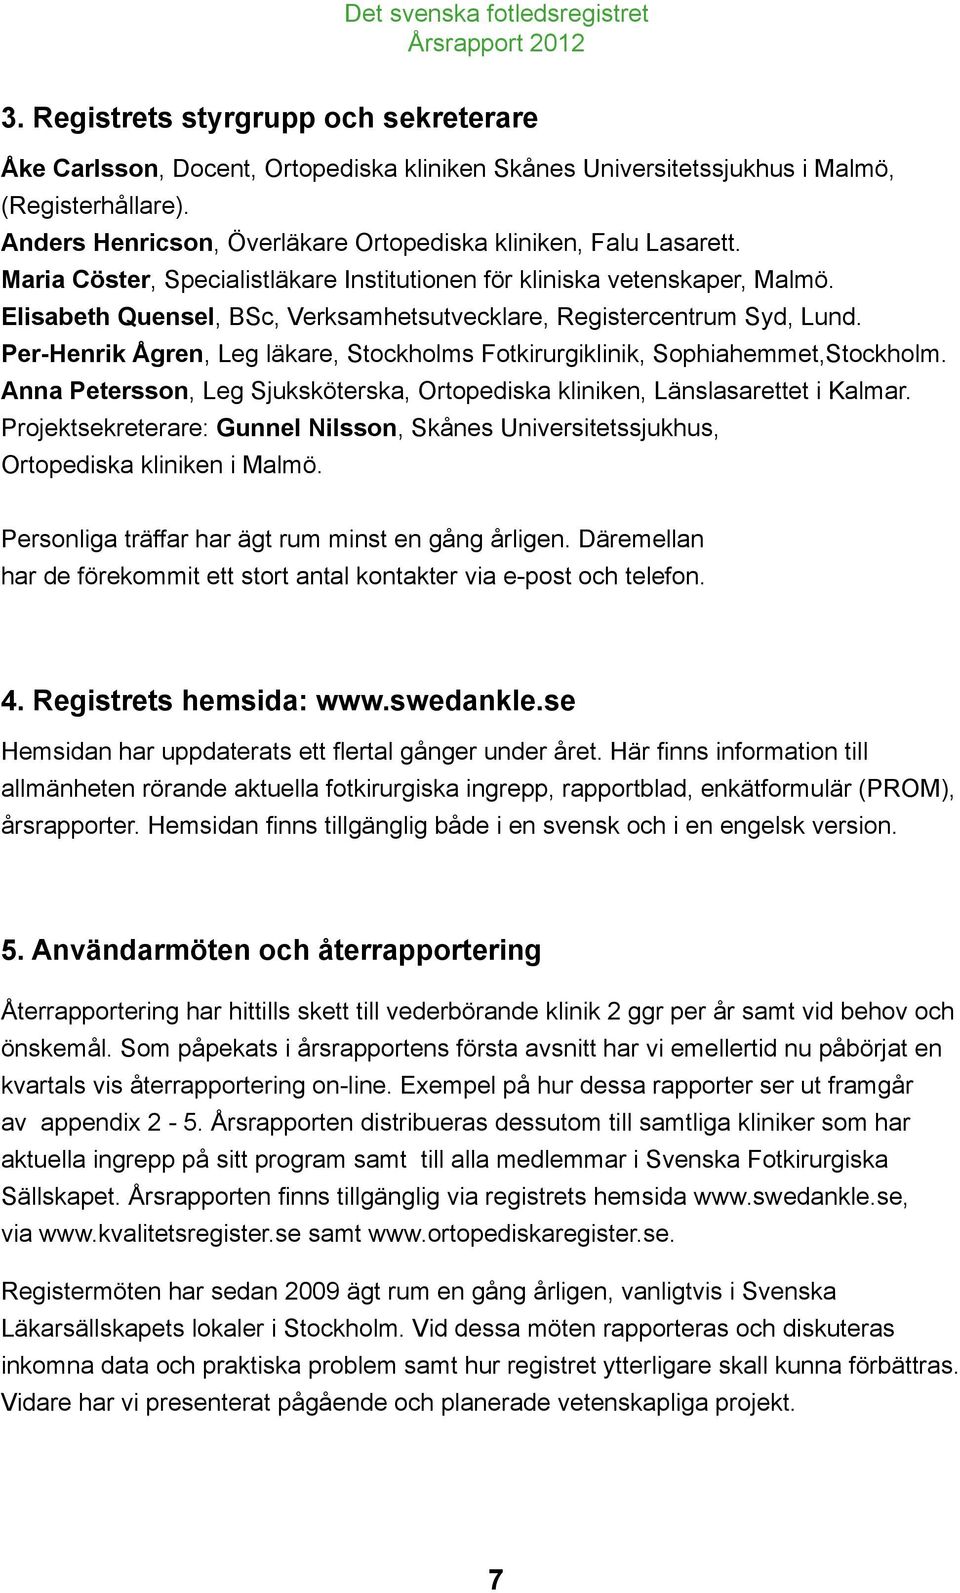 Elisabeth Quensel, BSc, Verksamhetsutvecklare, Registercentrum Syd, Lund. Per-Henrik Ågren, Leg läkare, Stockholms Fotkirurgiklinik, Sophiahemmet,Stockholm.